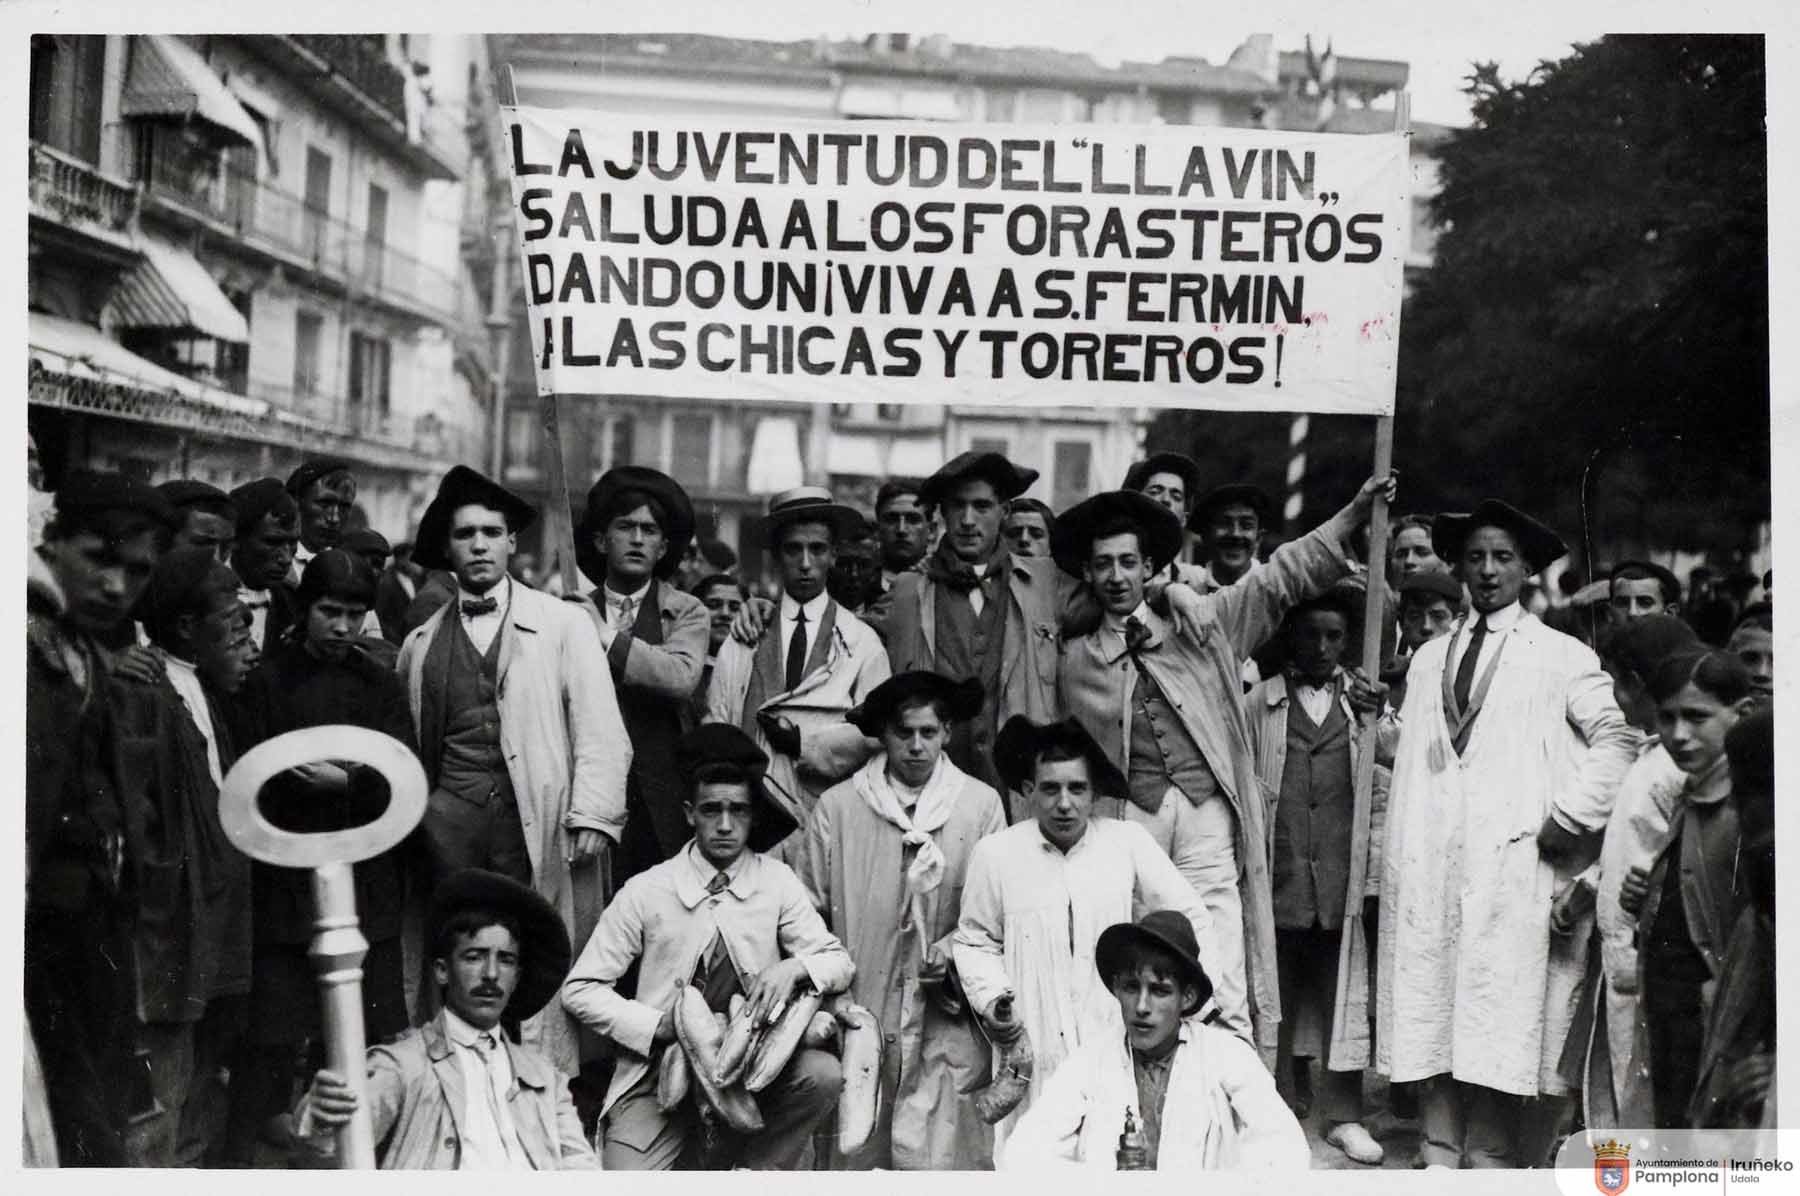 1914. Los ‘Blusas blancas’ o la denominada ‘Juventud del Llavín’ posan con su cartel en la plaza del Castillo. (Foto Roldán, Colección Arazuri, Archivo Municipal U0080415)